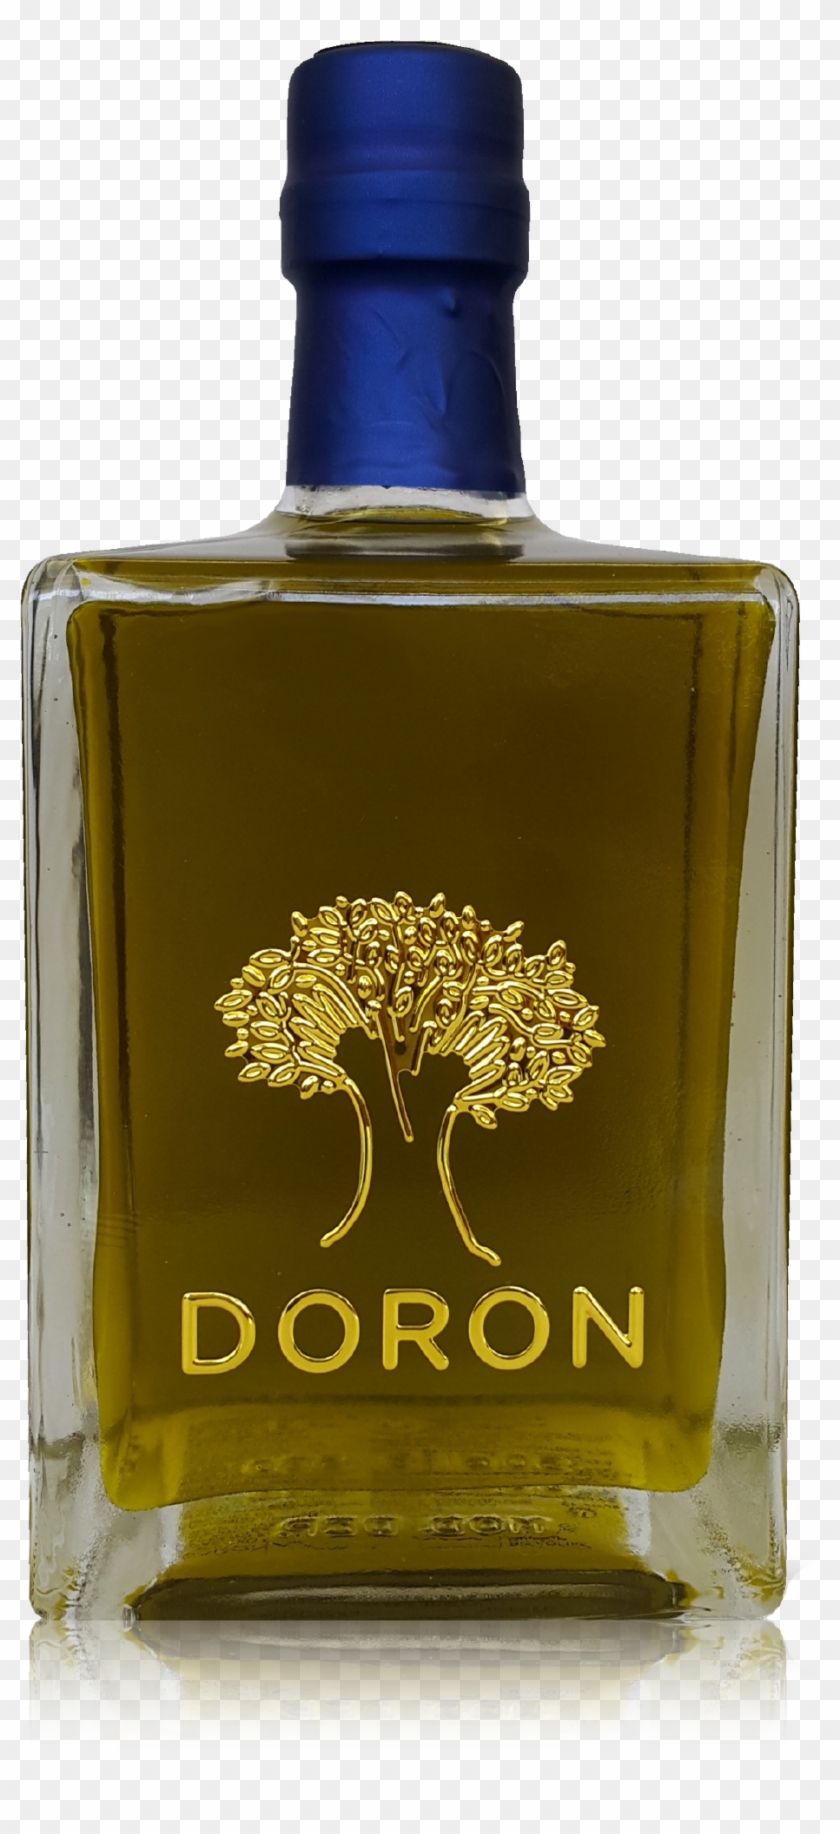 Extra Virgin Olive Oil - Glass Bottle Clipart #1291009